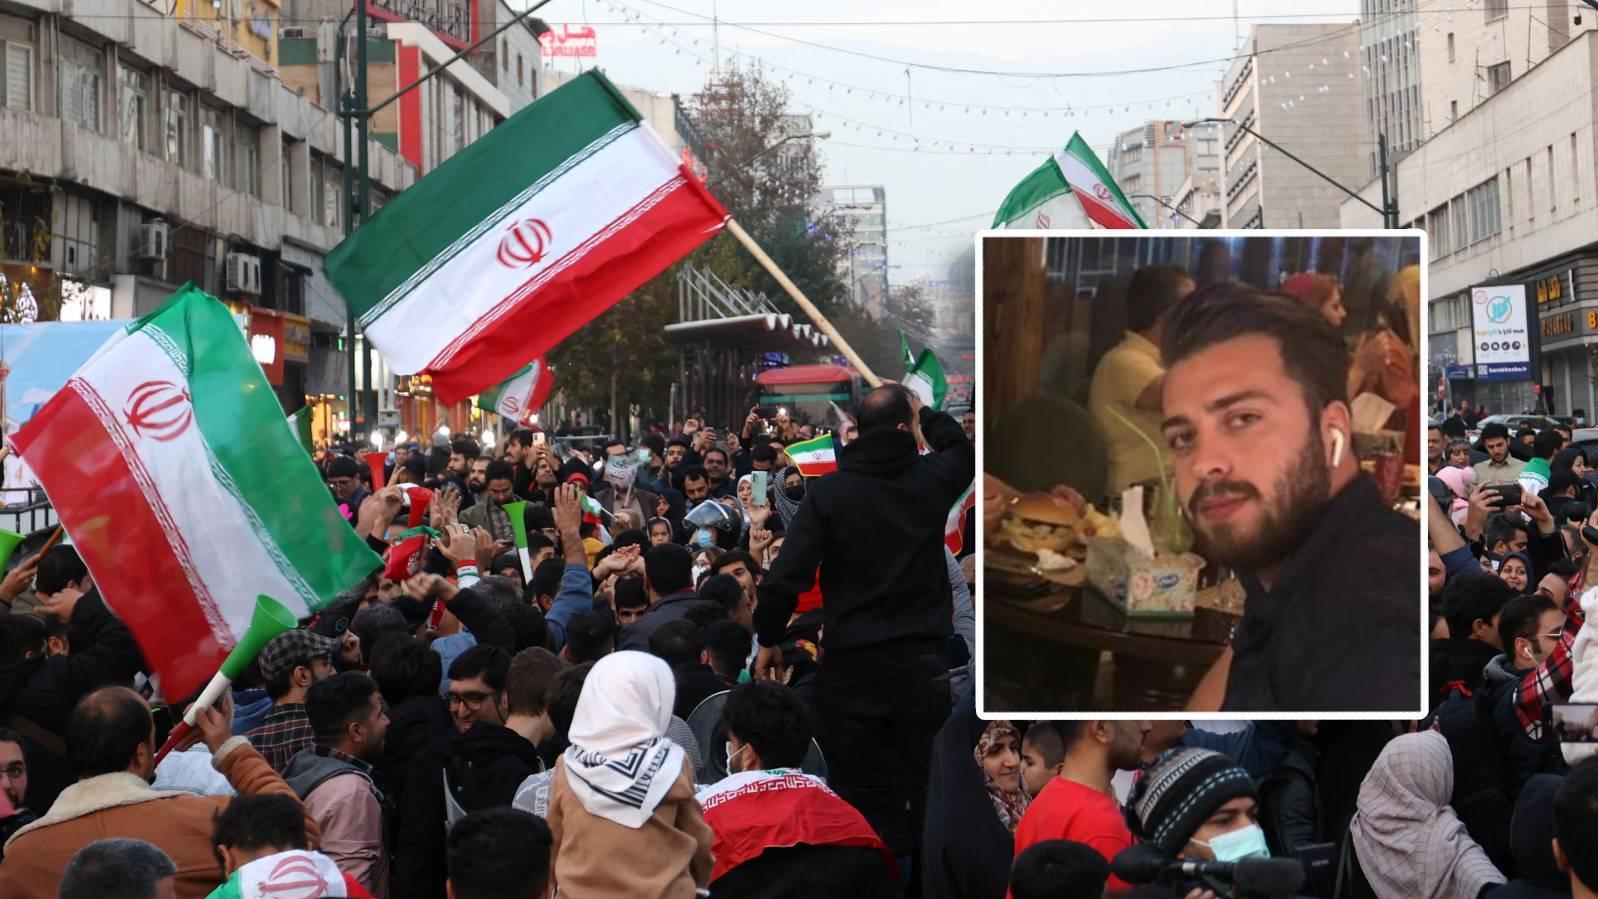 Hingerichtet wegen WM-Freude? - Tod von Samak erschüttert den Iran